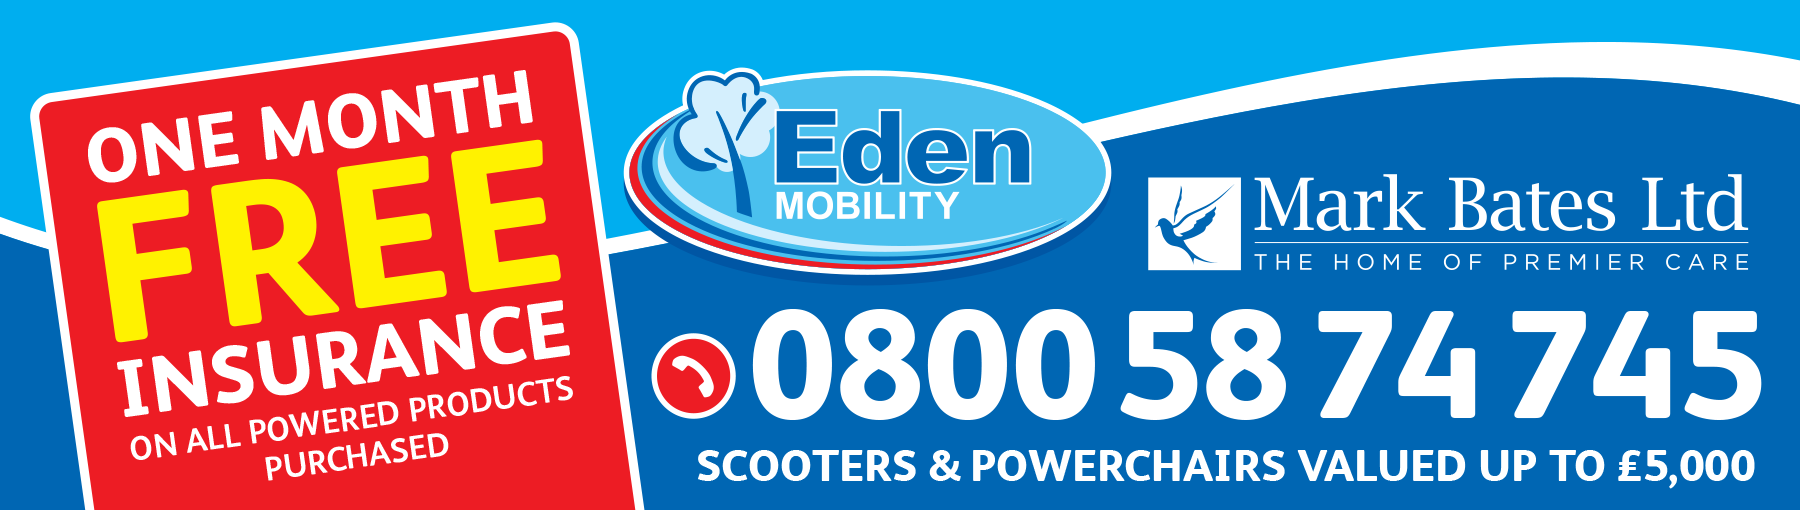 Eden Mobility Insurance